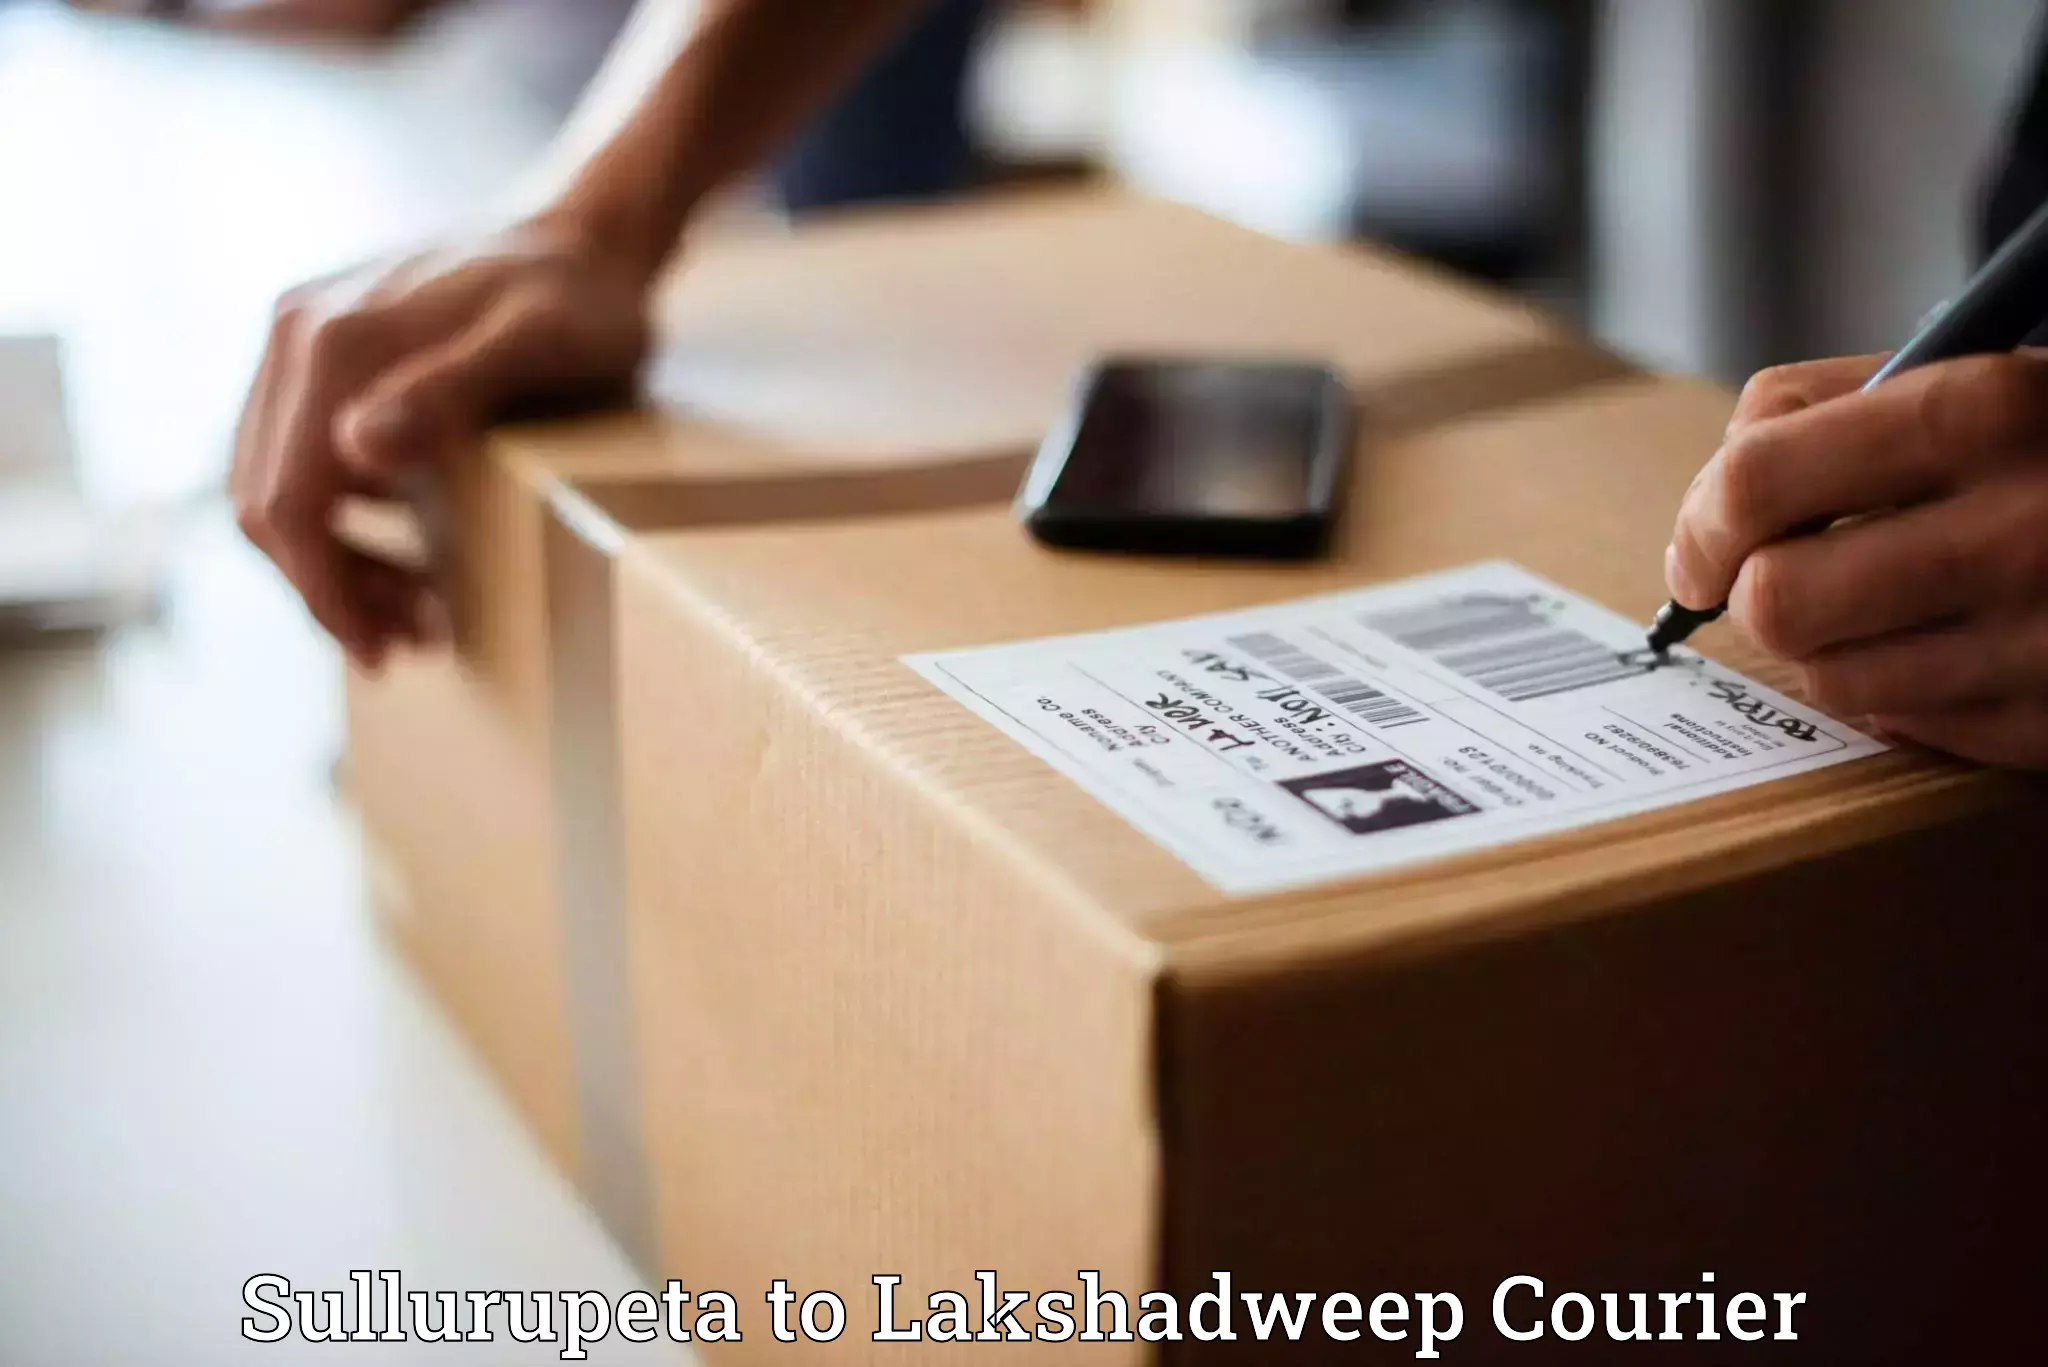 Secure packaging Sullurupeta to Lakshadweep